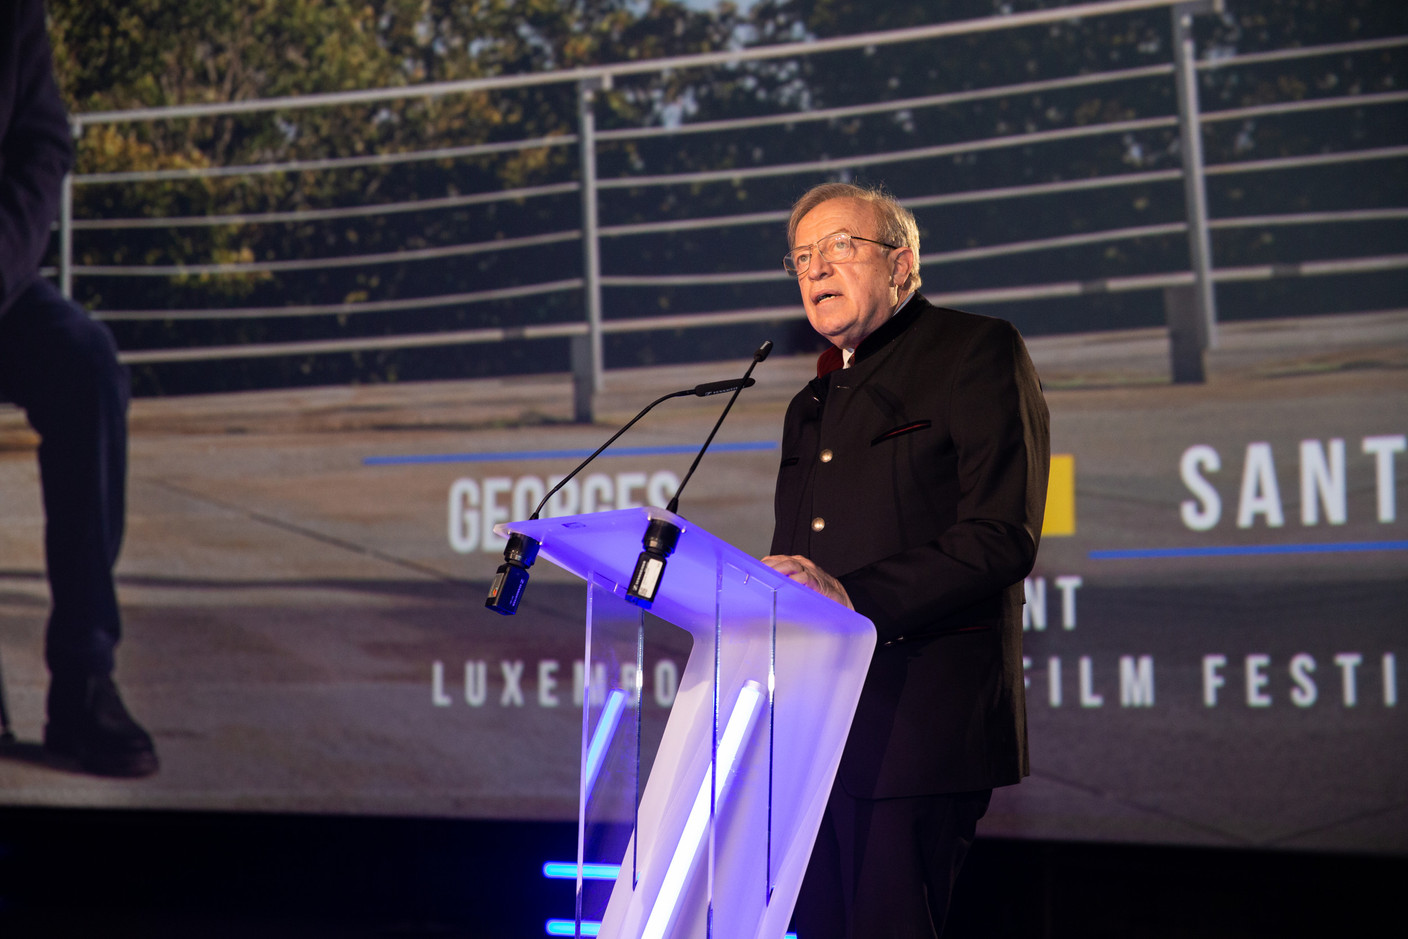 Le président du Luxembourg City Film Festival, Georges Santer, a été chahuté par une voix isolée, mais a argumenté la difficile décision du festival. (Photo: Romain Gamba/Maison Moderne)